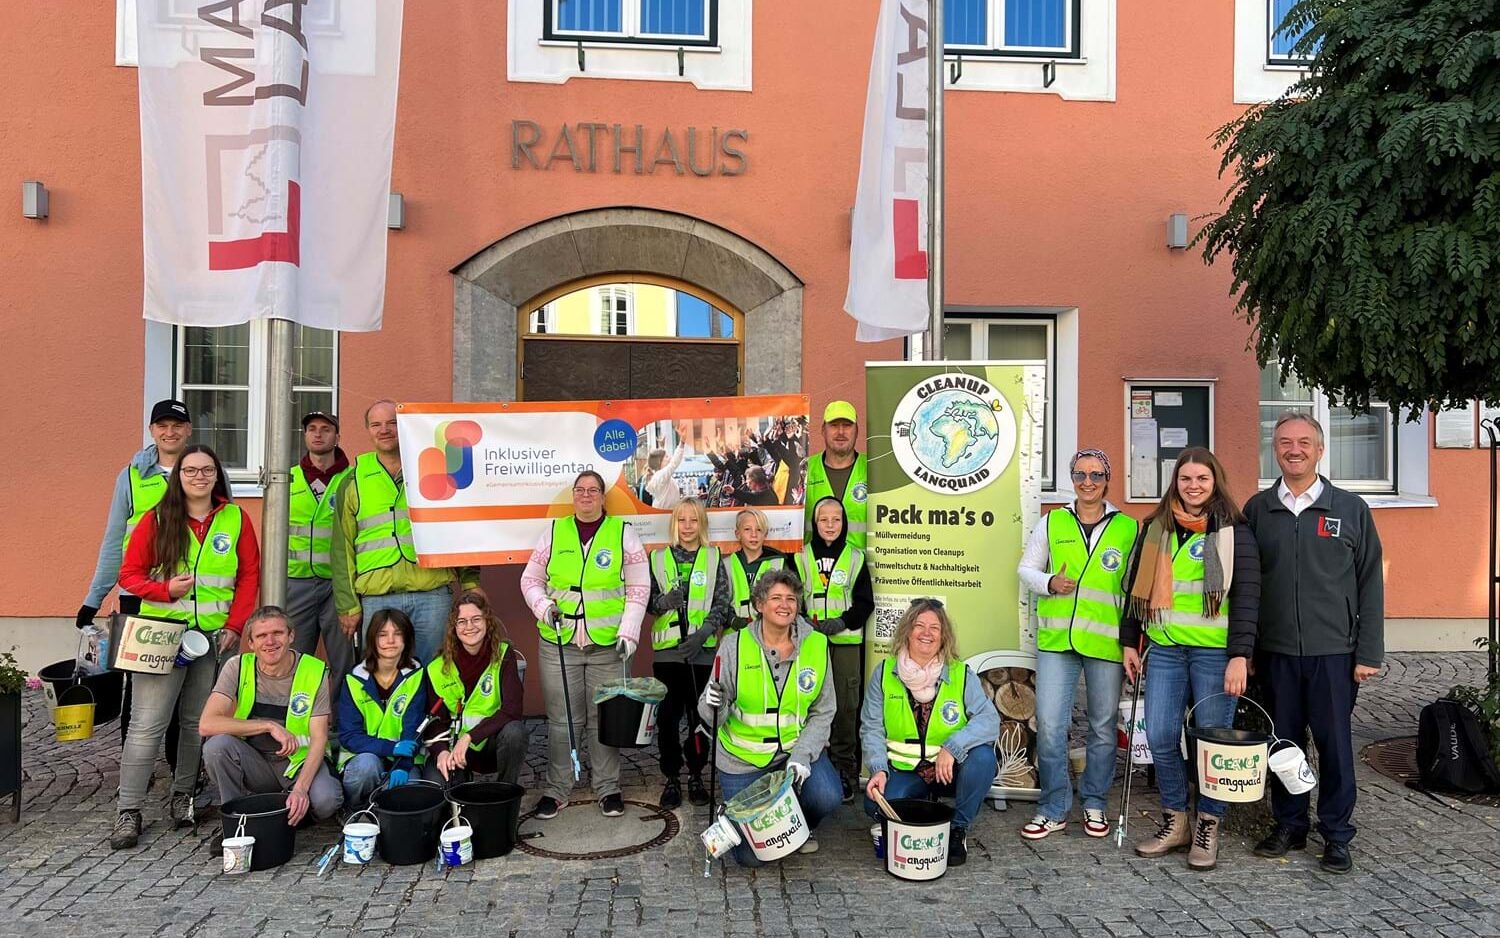 Eine Gruppe von Menschen, 3 Kinder, 6 Frauen und 7 Männer, posiert in neongelben Warnwesten vor dem Rathaus in Kehlheim. Sie haben Eimer in der Hand.